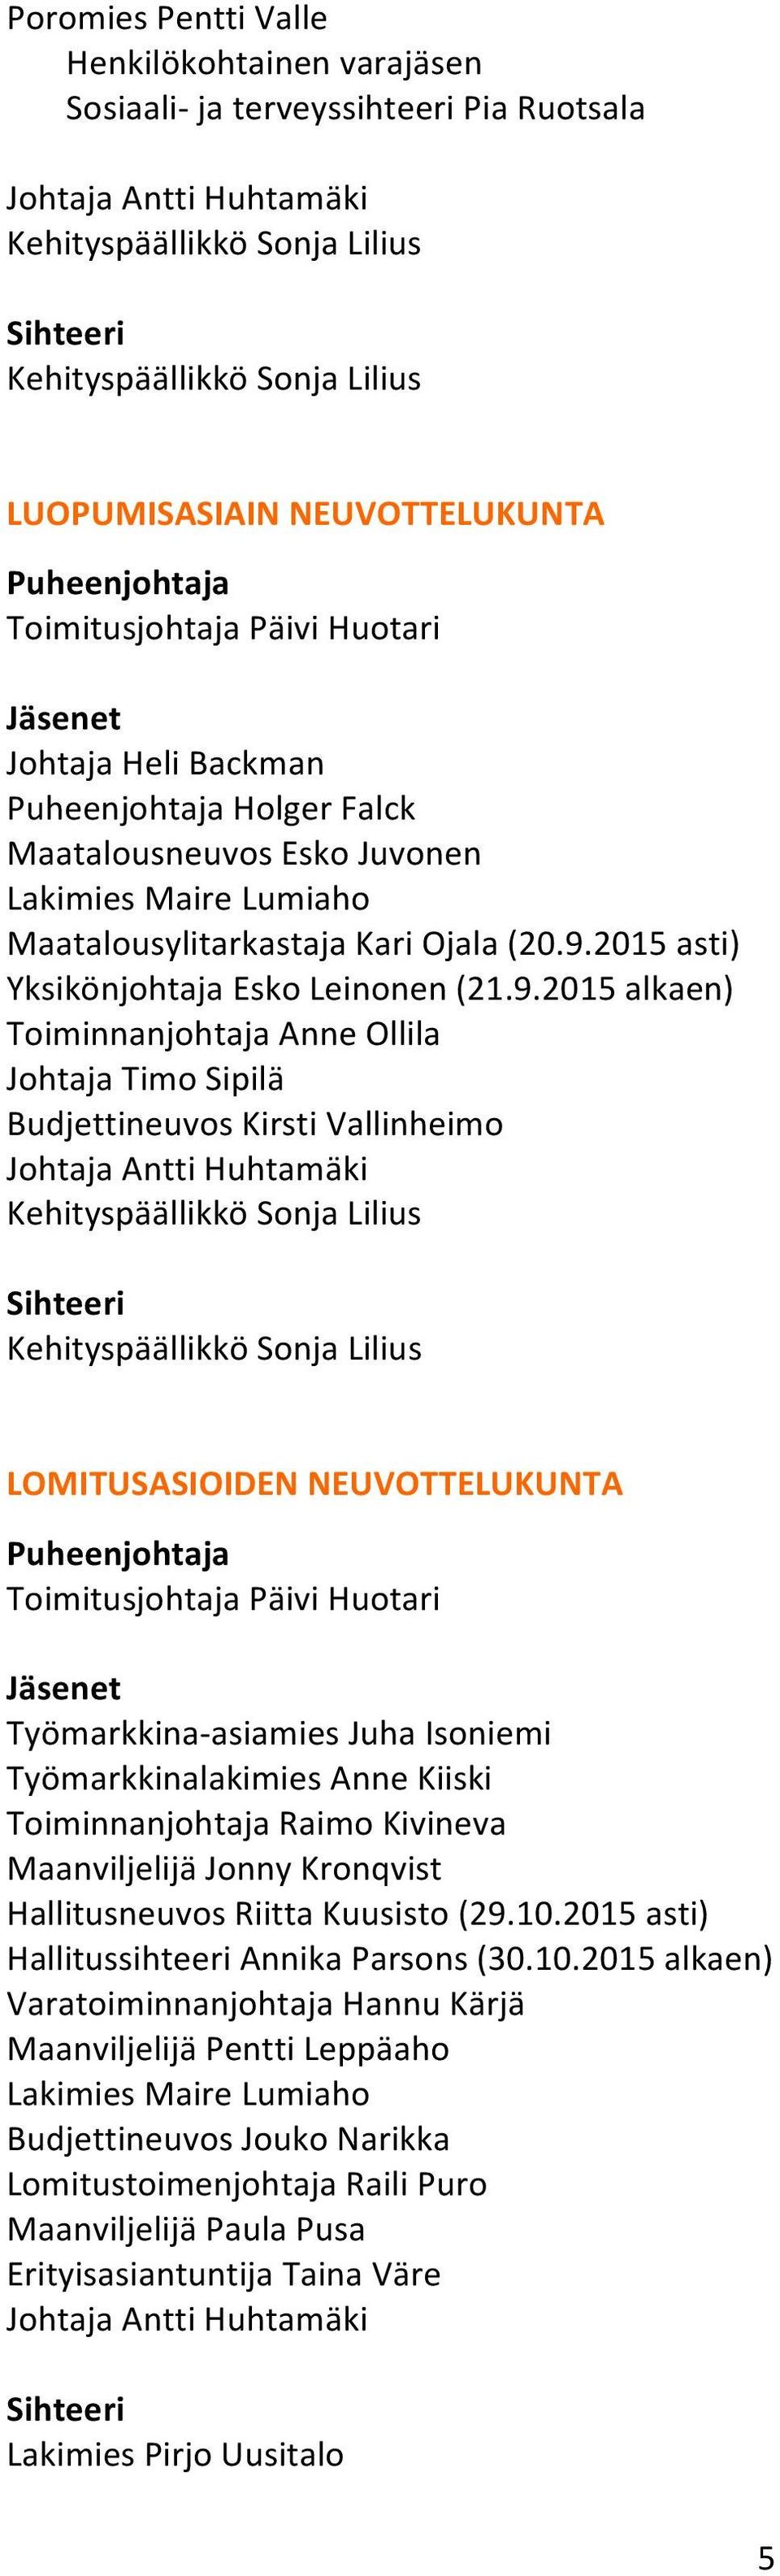 2015 asti) Yksikönjohtaja Esko Leinonen (21.9.